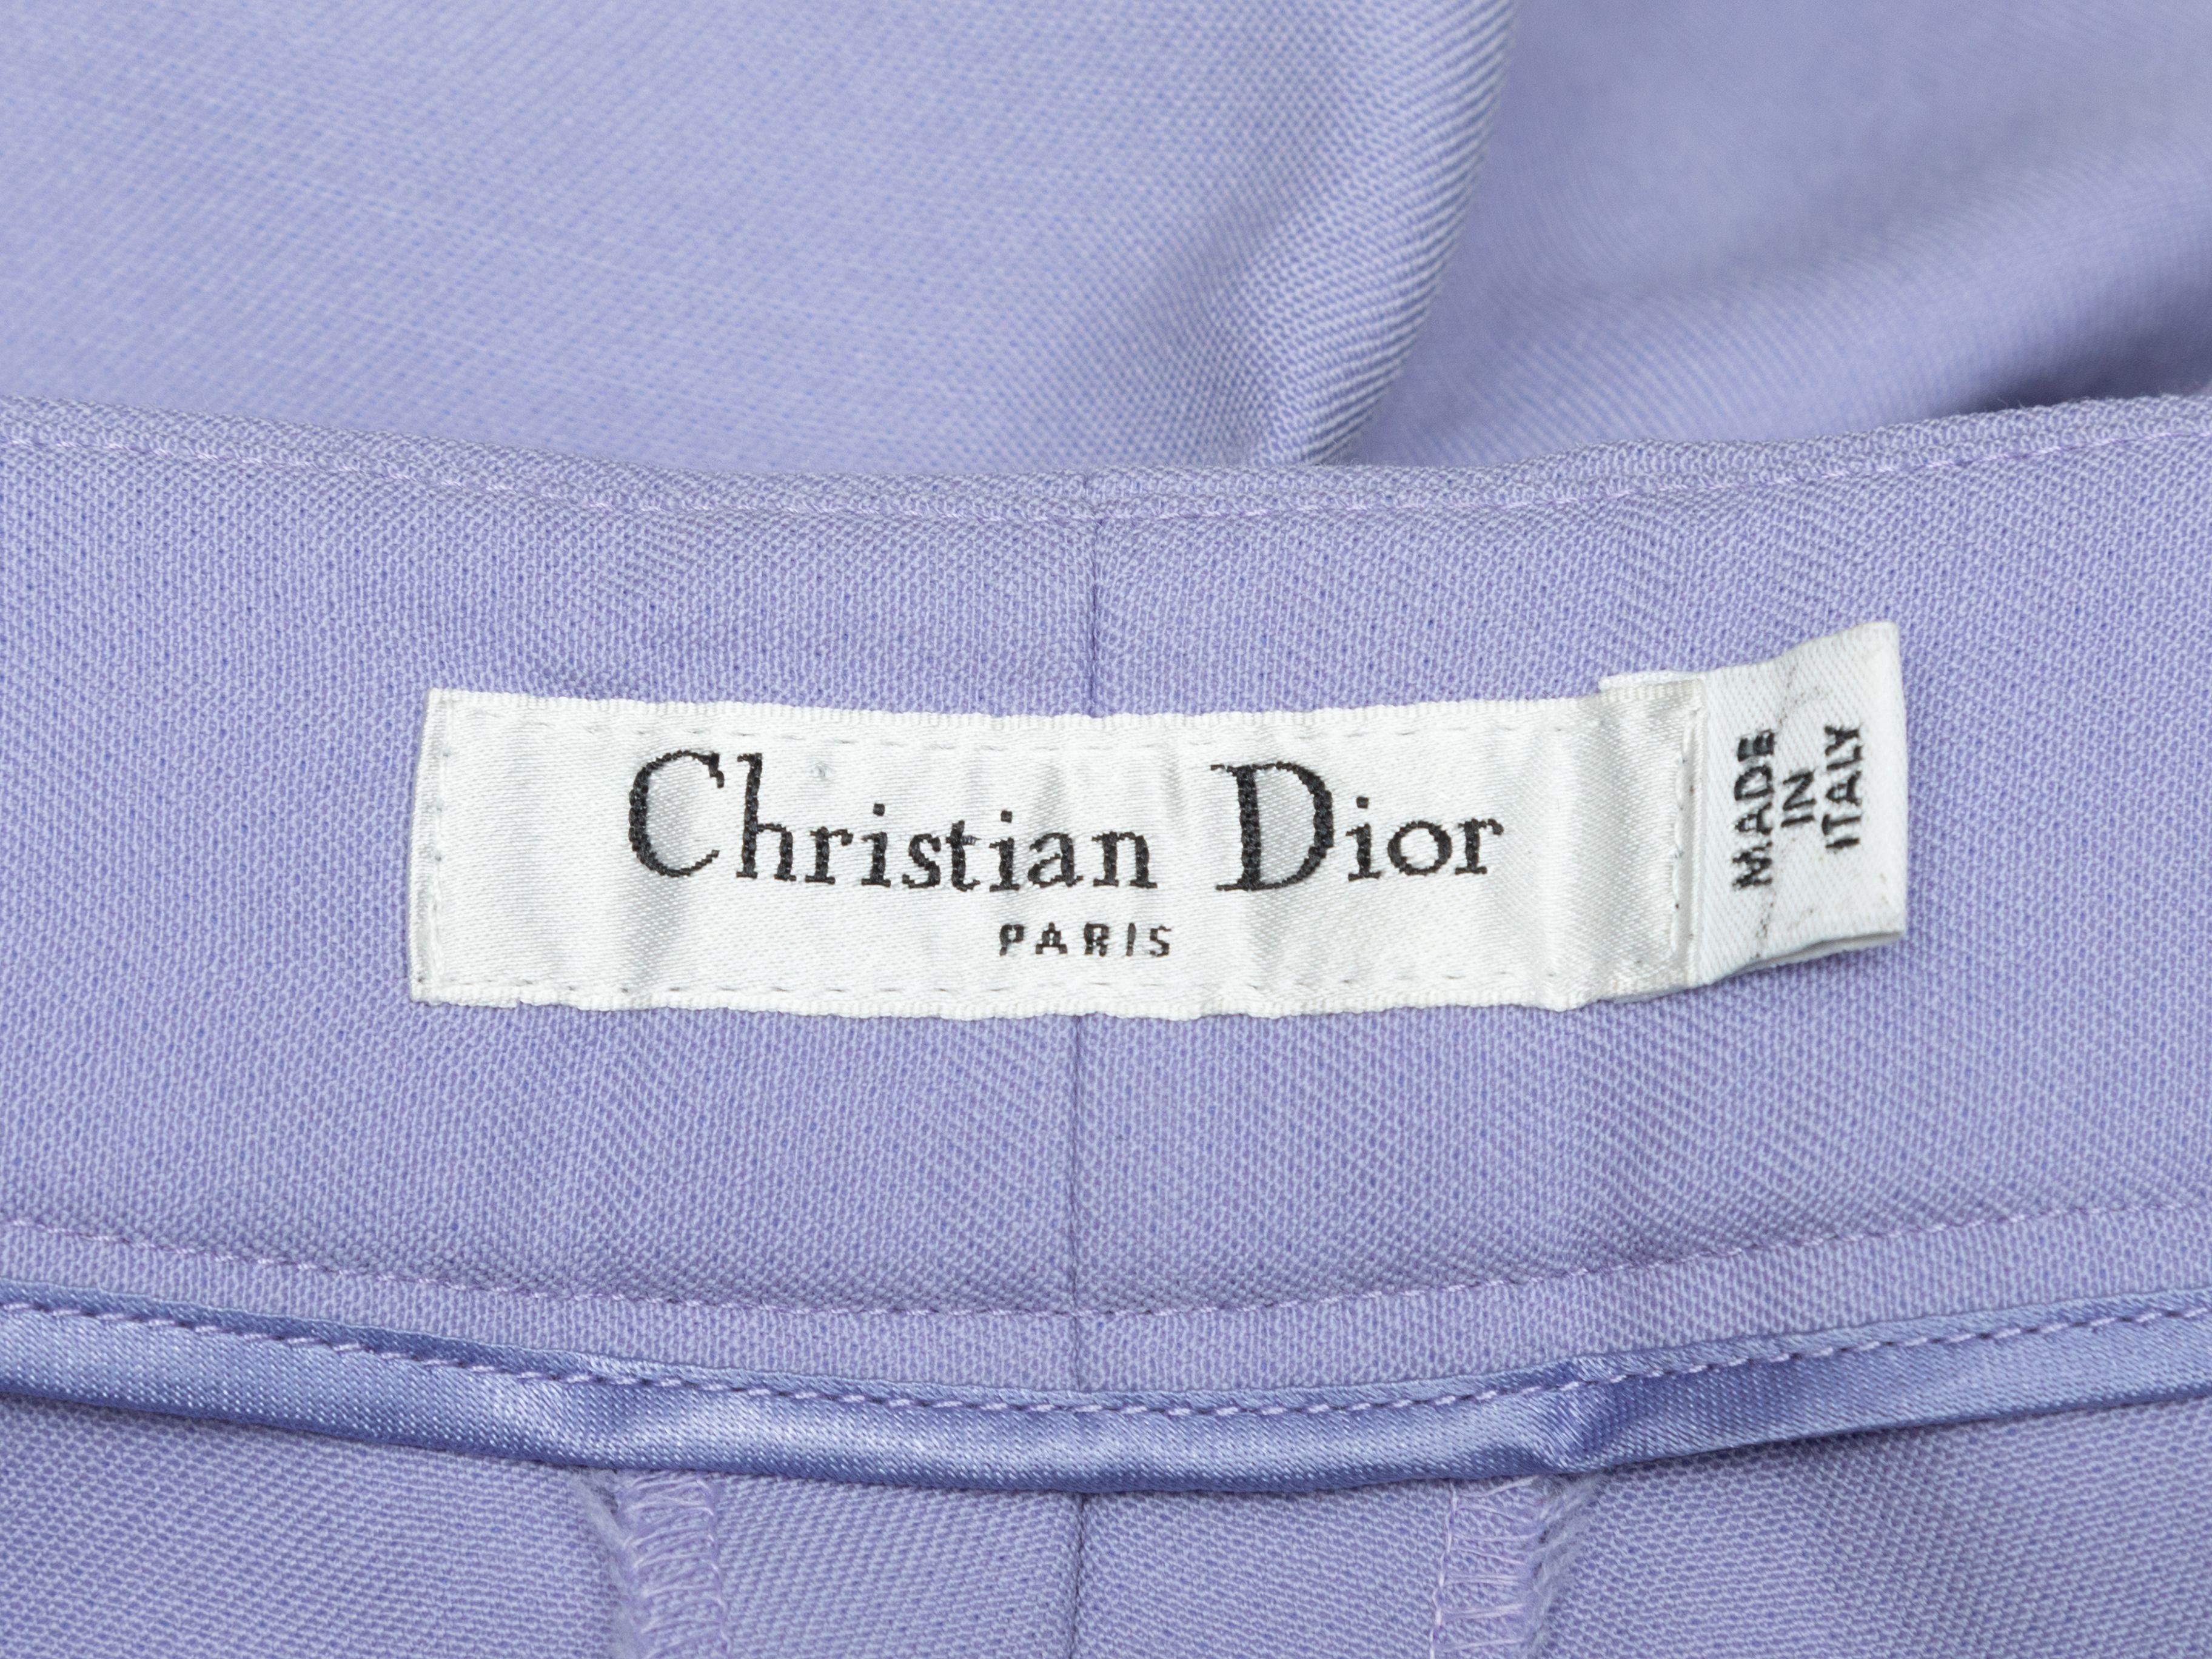 Détails du produit : Pantalon large en laine vierge lavande Christian Dior. Fermeture éclair sur le côté. Taille de 30